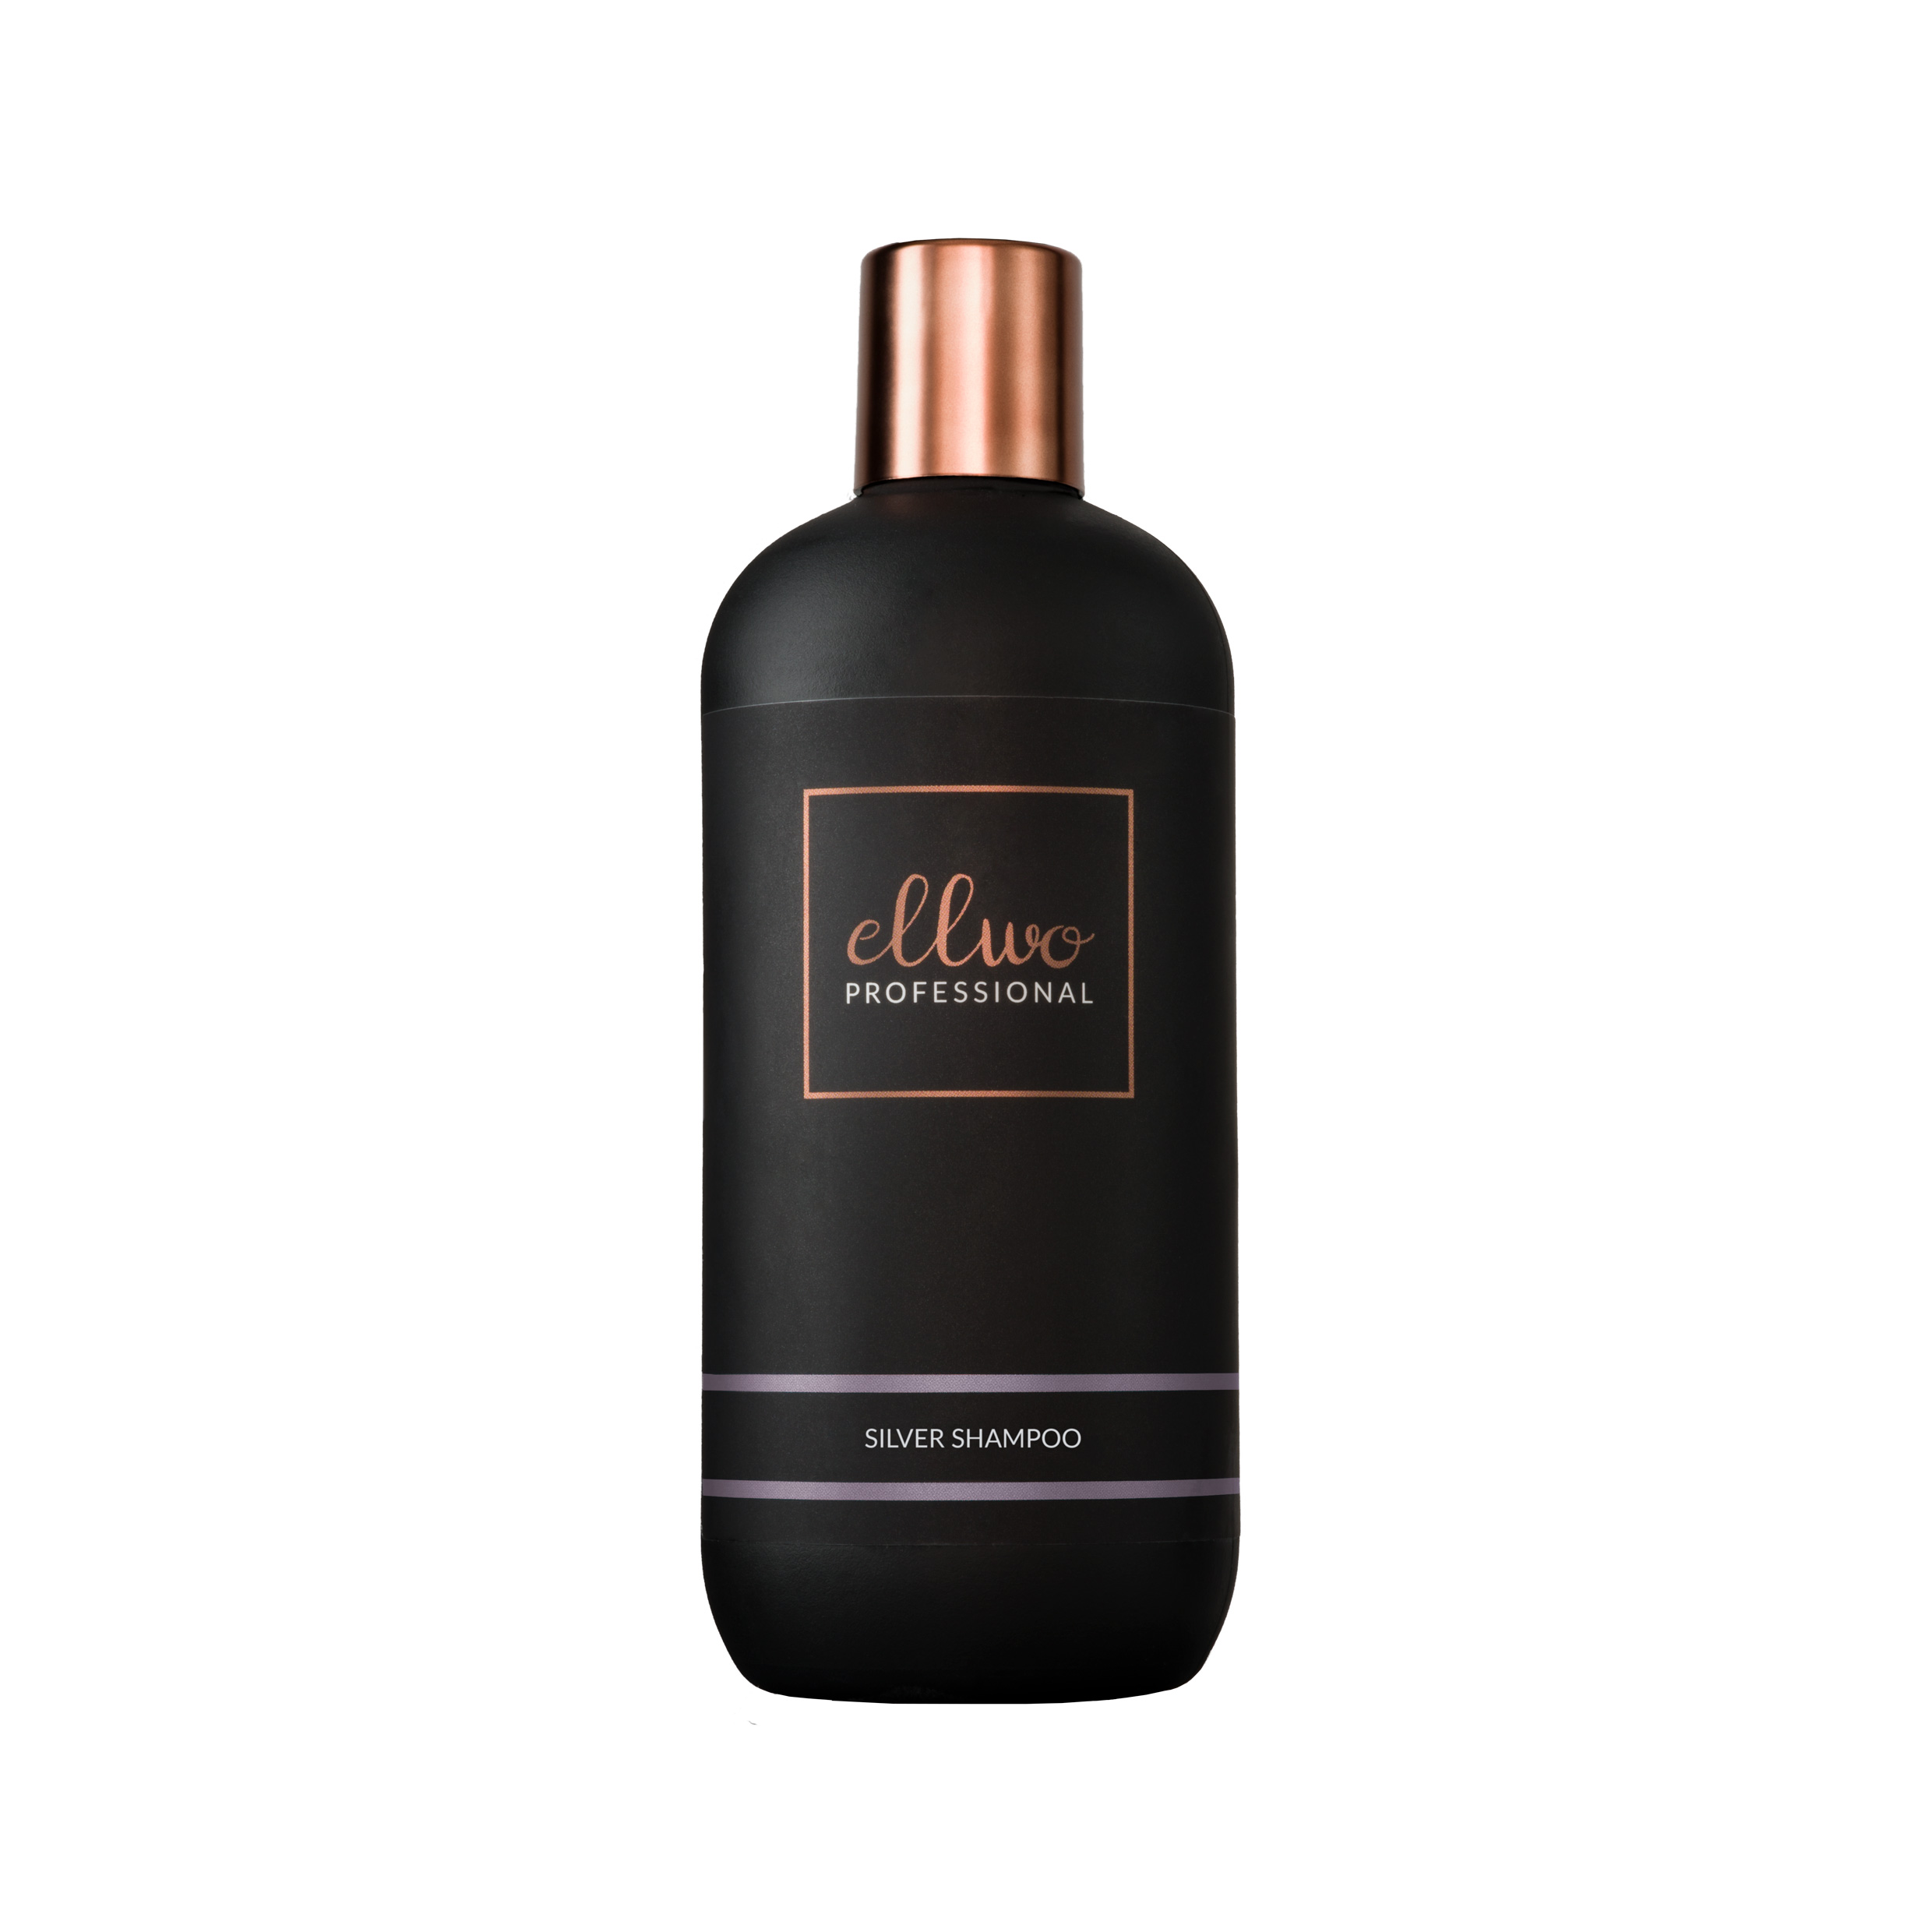 Ellwo Professional Silver Shampoo 350 ml